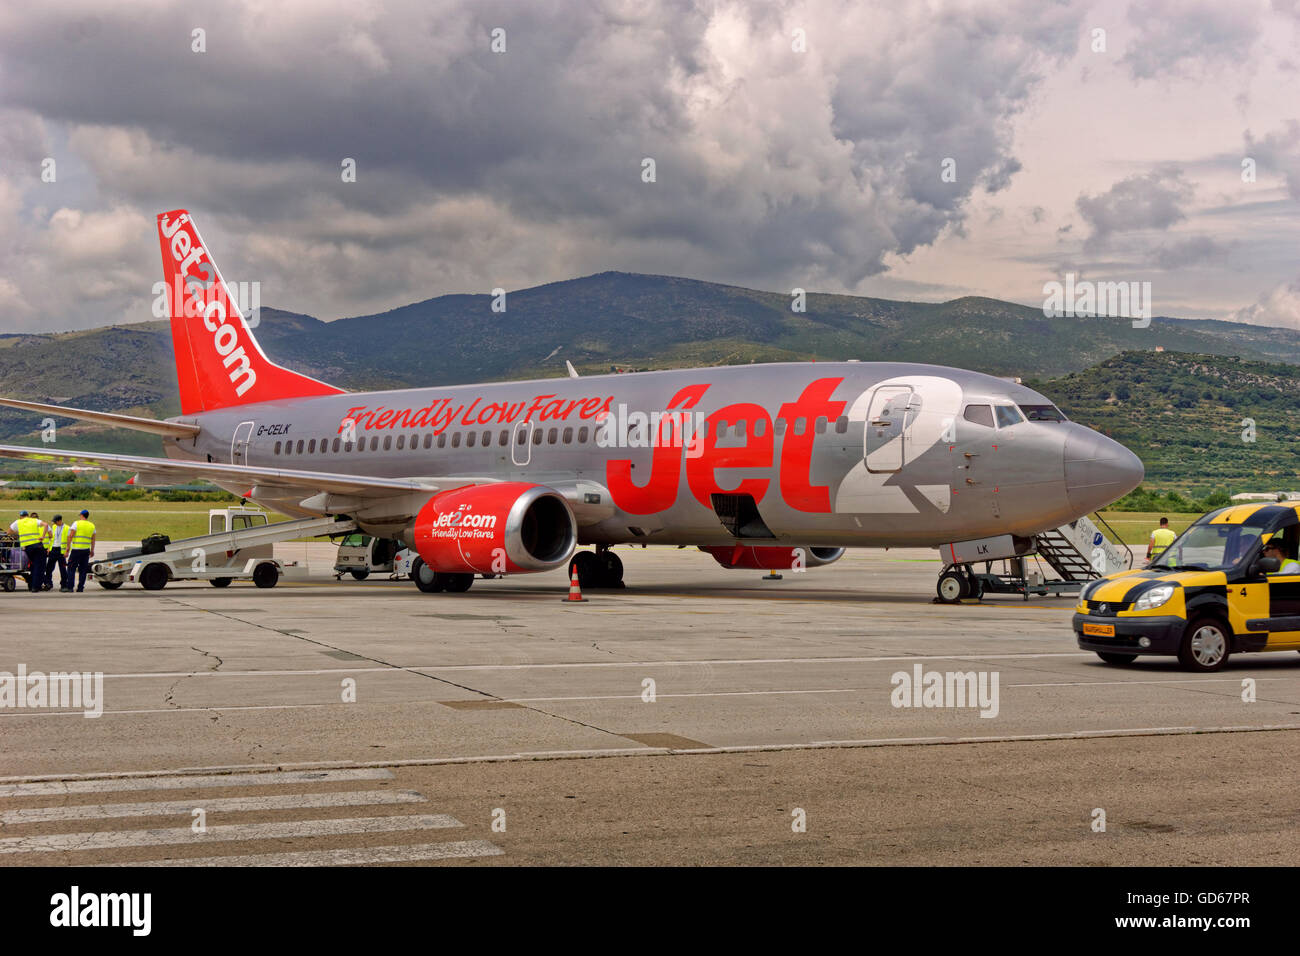 Jet2 Aircraft at Split Airport, Croatia. Stock Photo